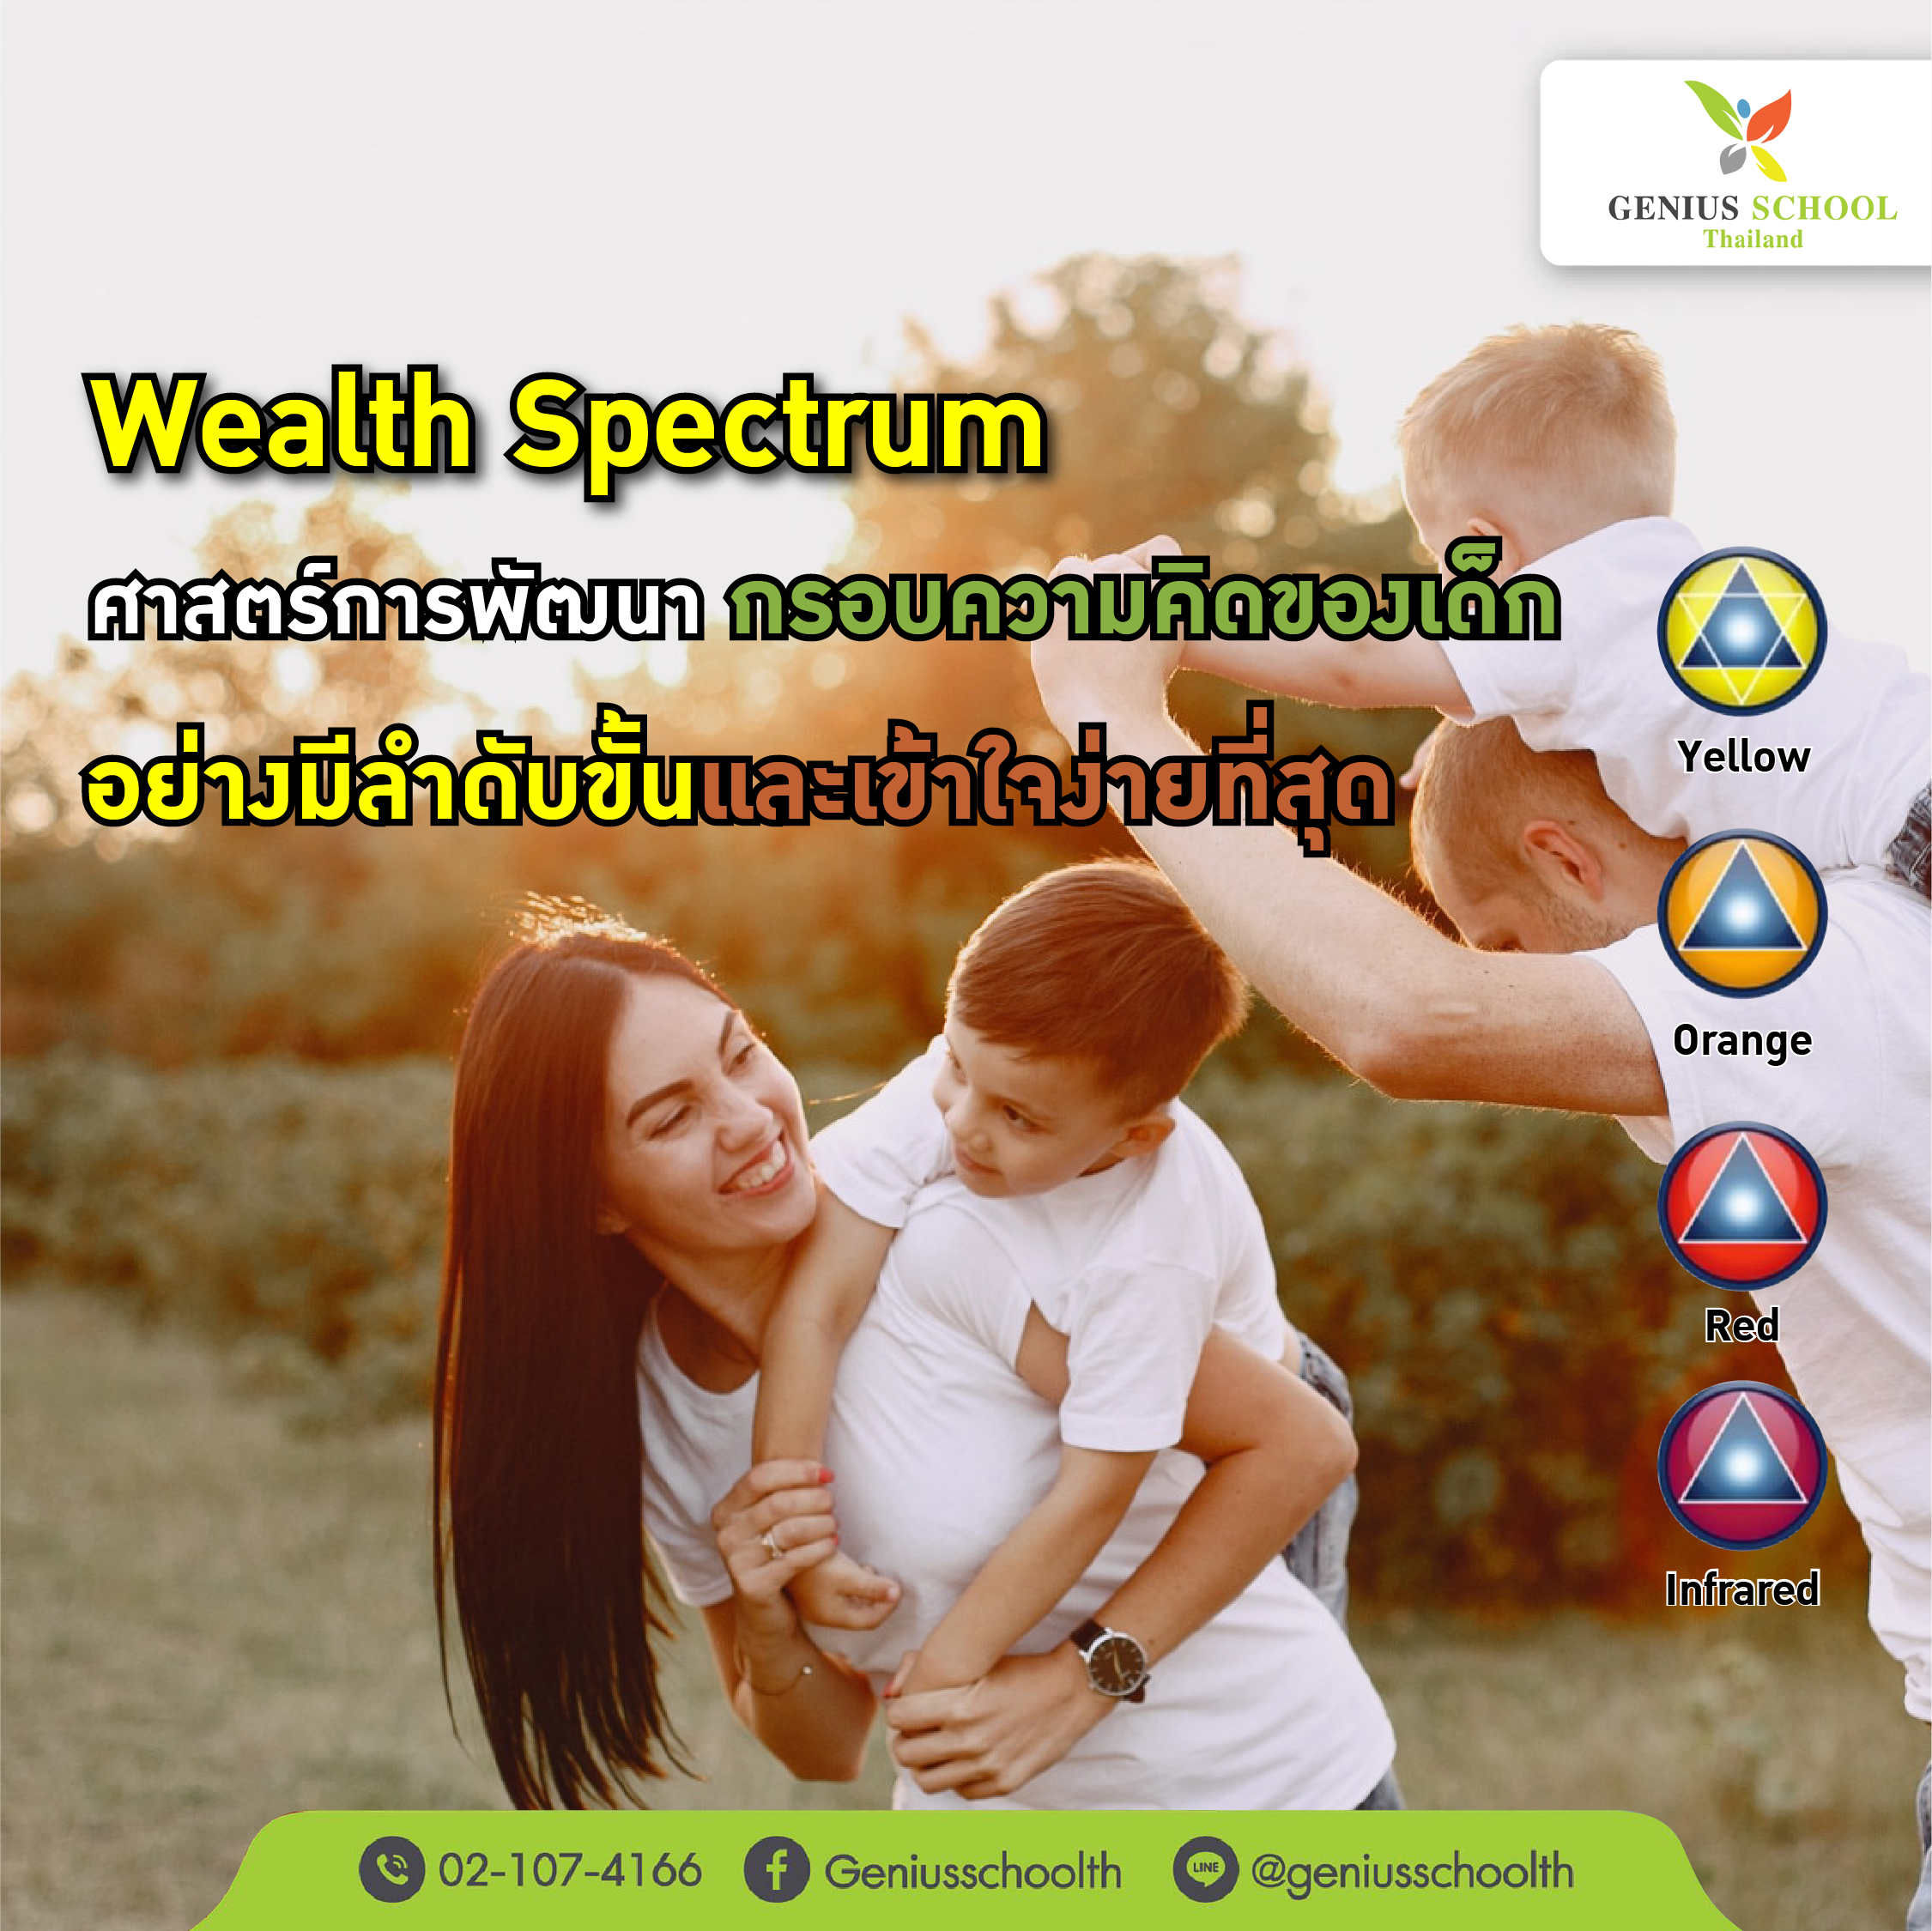 <h1>Wealth Spectrum ศาสตร์การพัฒนา Growth Mindset ของเด็ก อย่างมีลำดับขั้นและเข้าใจง่ายที่สุด</h1>